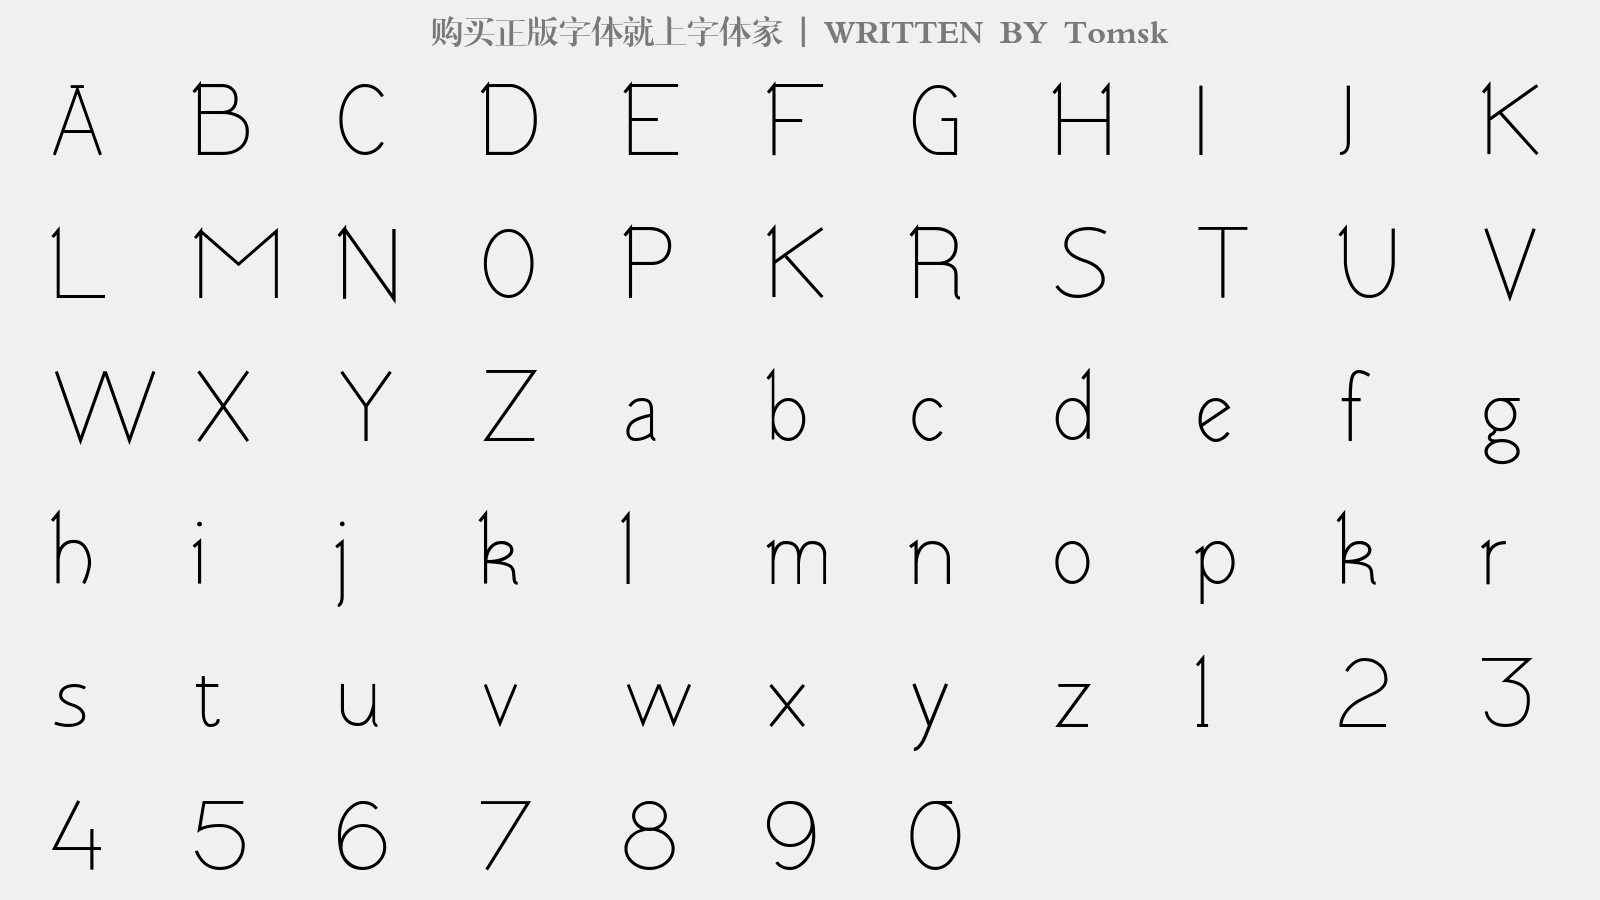 Tomsk - 大写字母/小写字母/数字